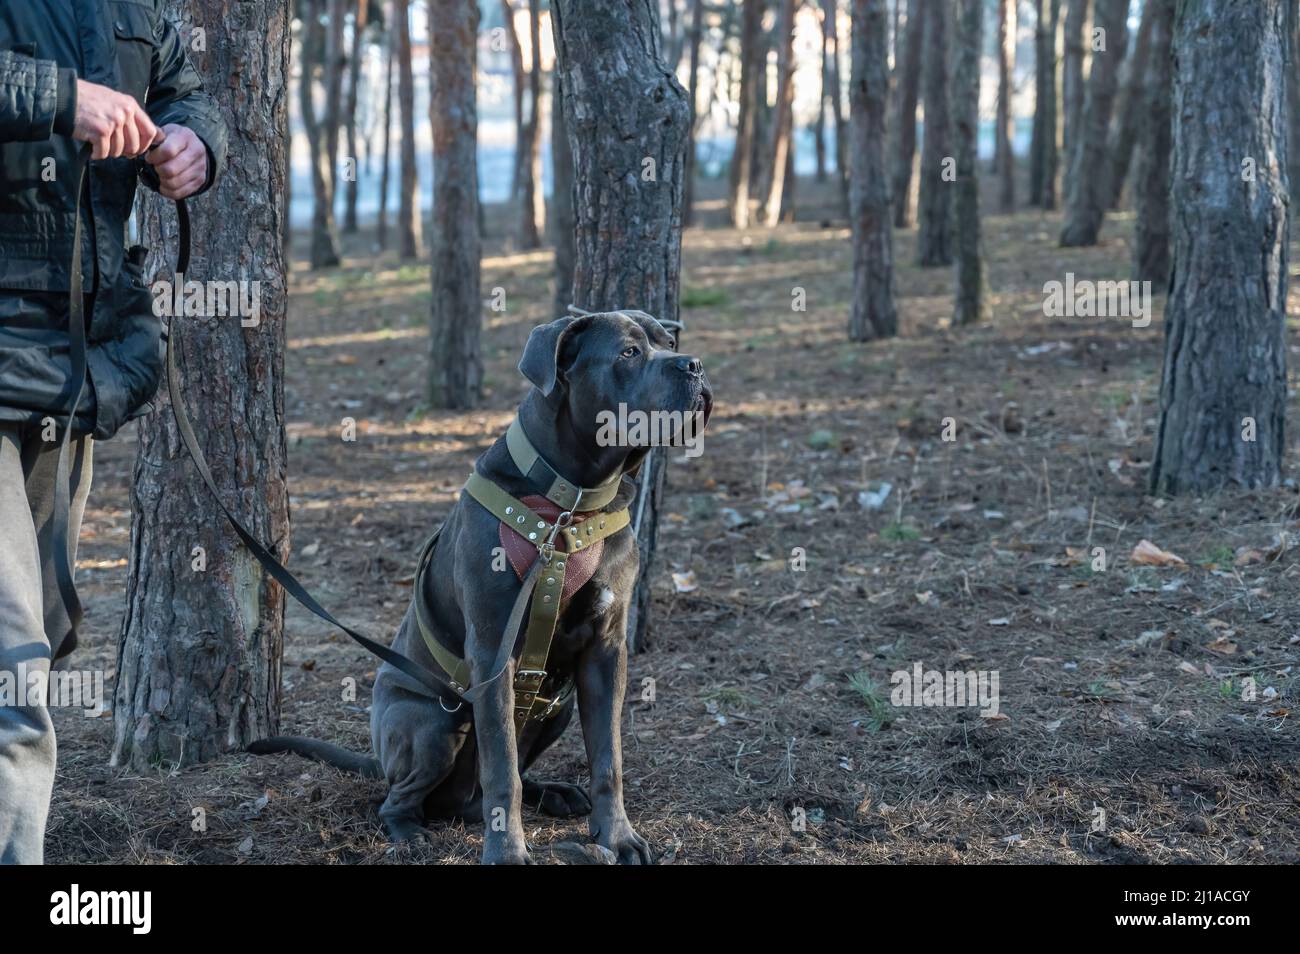 K9 formazione. Un cane maschio cane cane corso siede accanto al suo proprietario. L'animale domestico è legato ad un tronco dell'albero. I suoi occhi sono sull'allenatore che si avvicina. Foto Stock